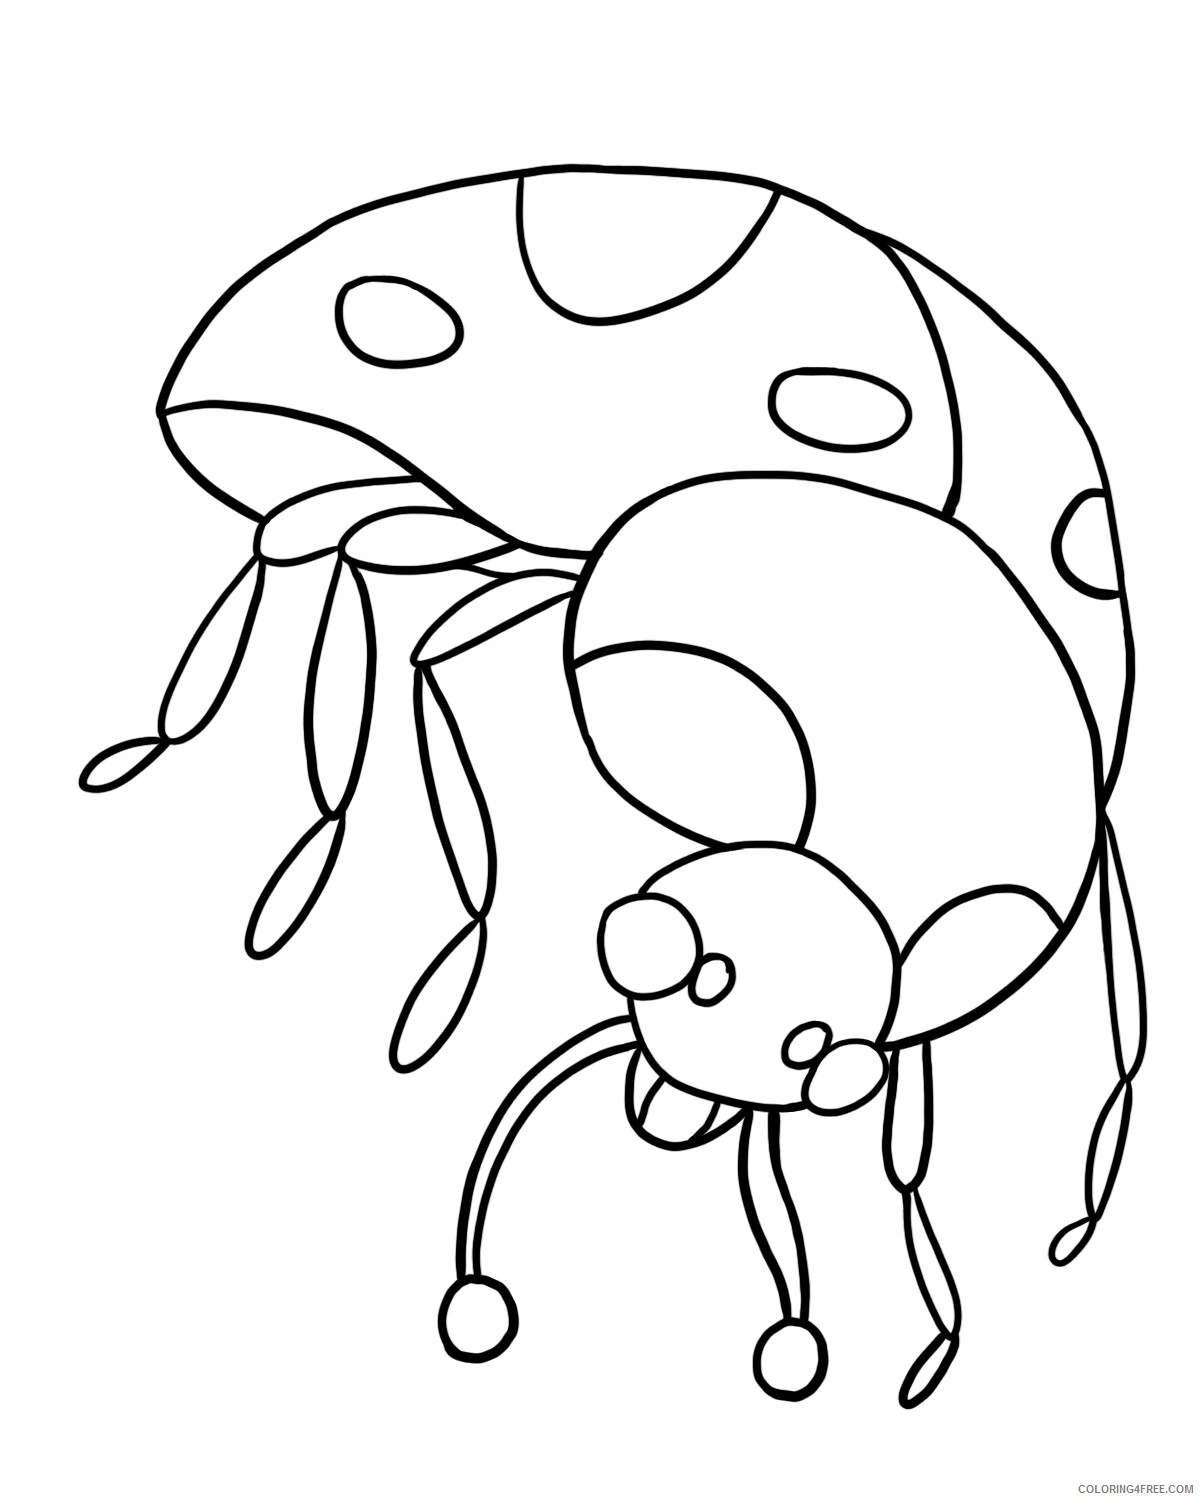 Ladybug Coloring Pages Animal Printable Sheets Ladybug Free 2021 3087 Coloring4free